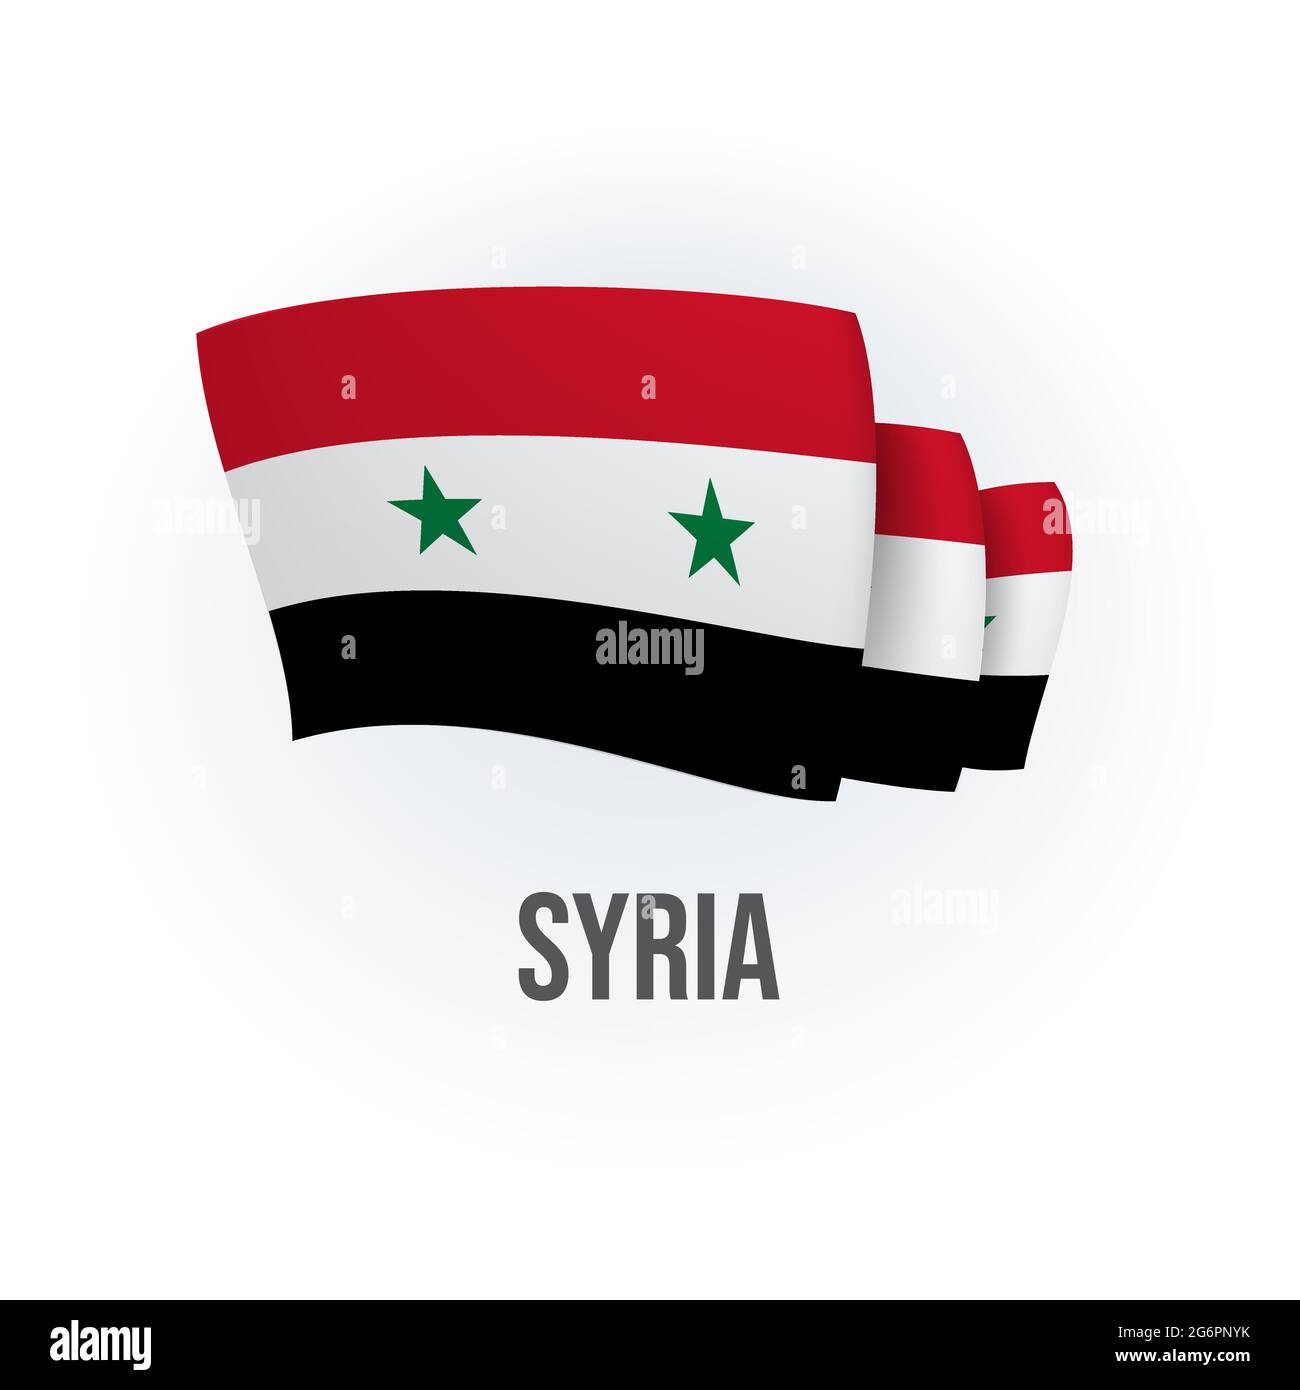 Syria Flag, Stock vector